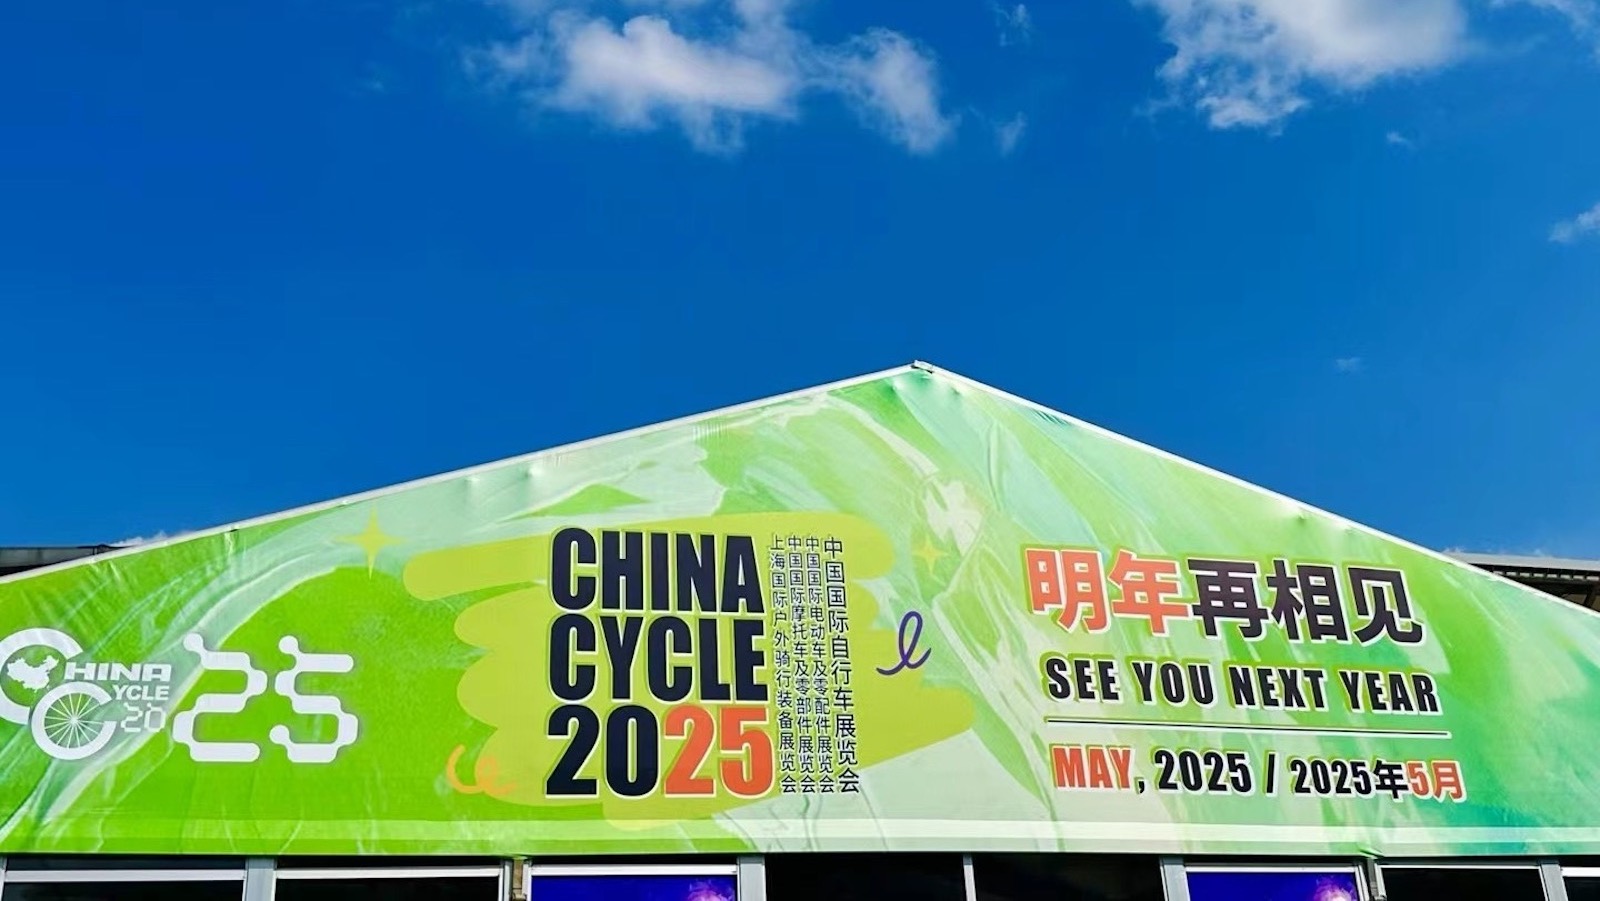 See You CHINA CYCLE 2025